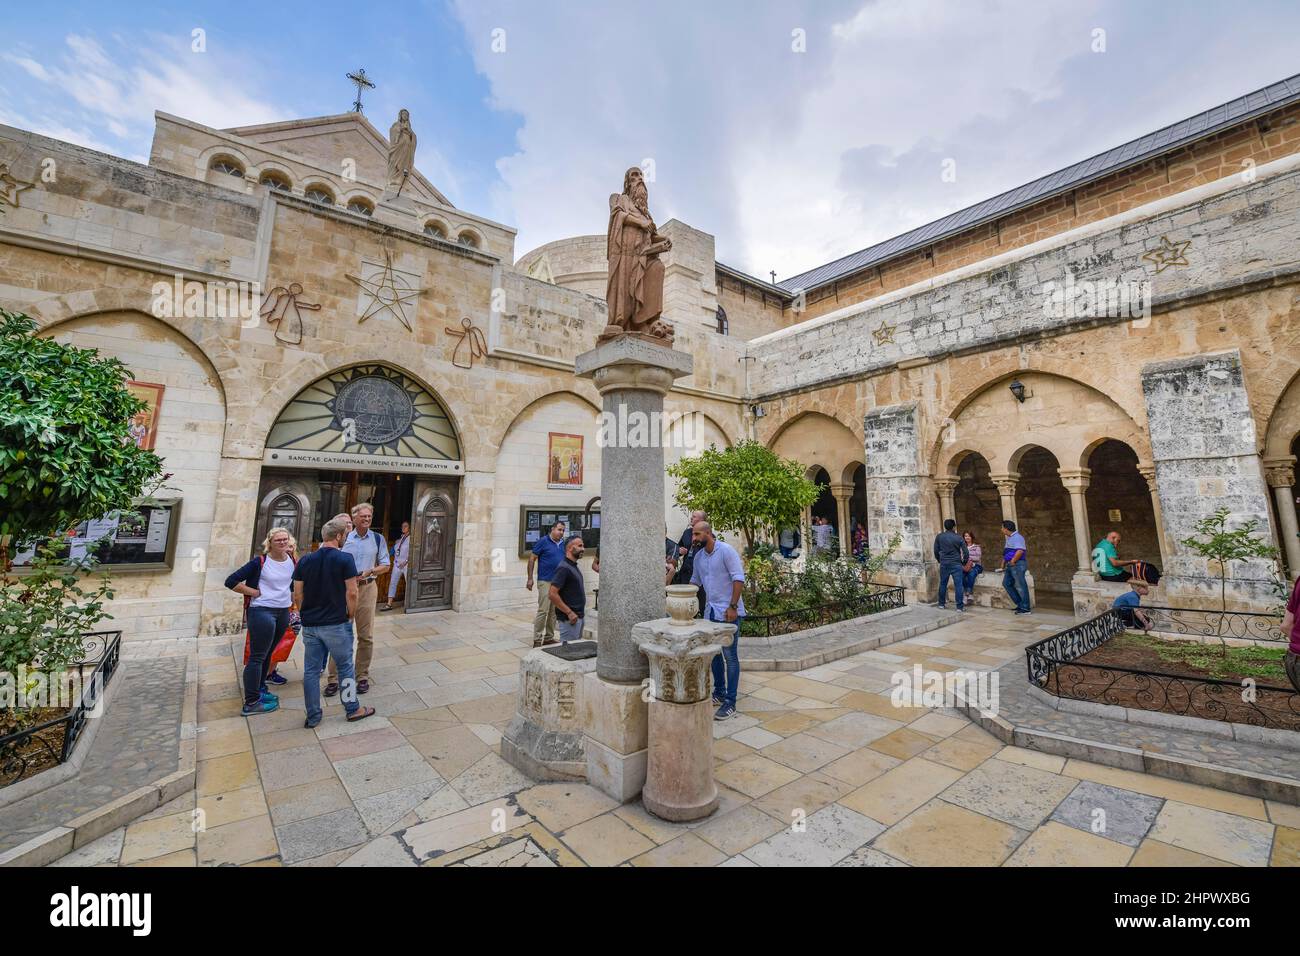 Kreuzgang Garten der St. Katharinen-Kirche, Bethlehem, Israel Stockfoto